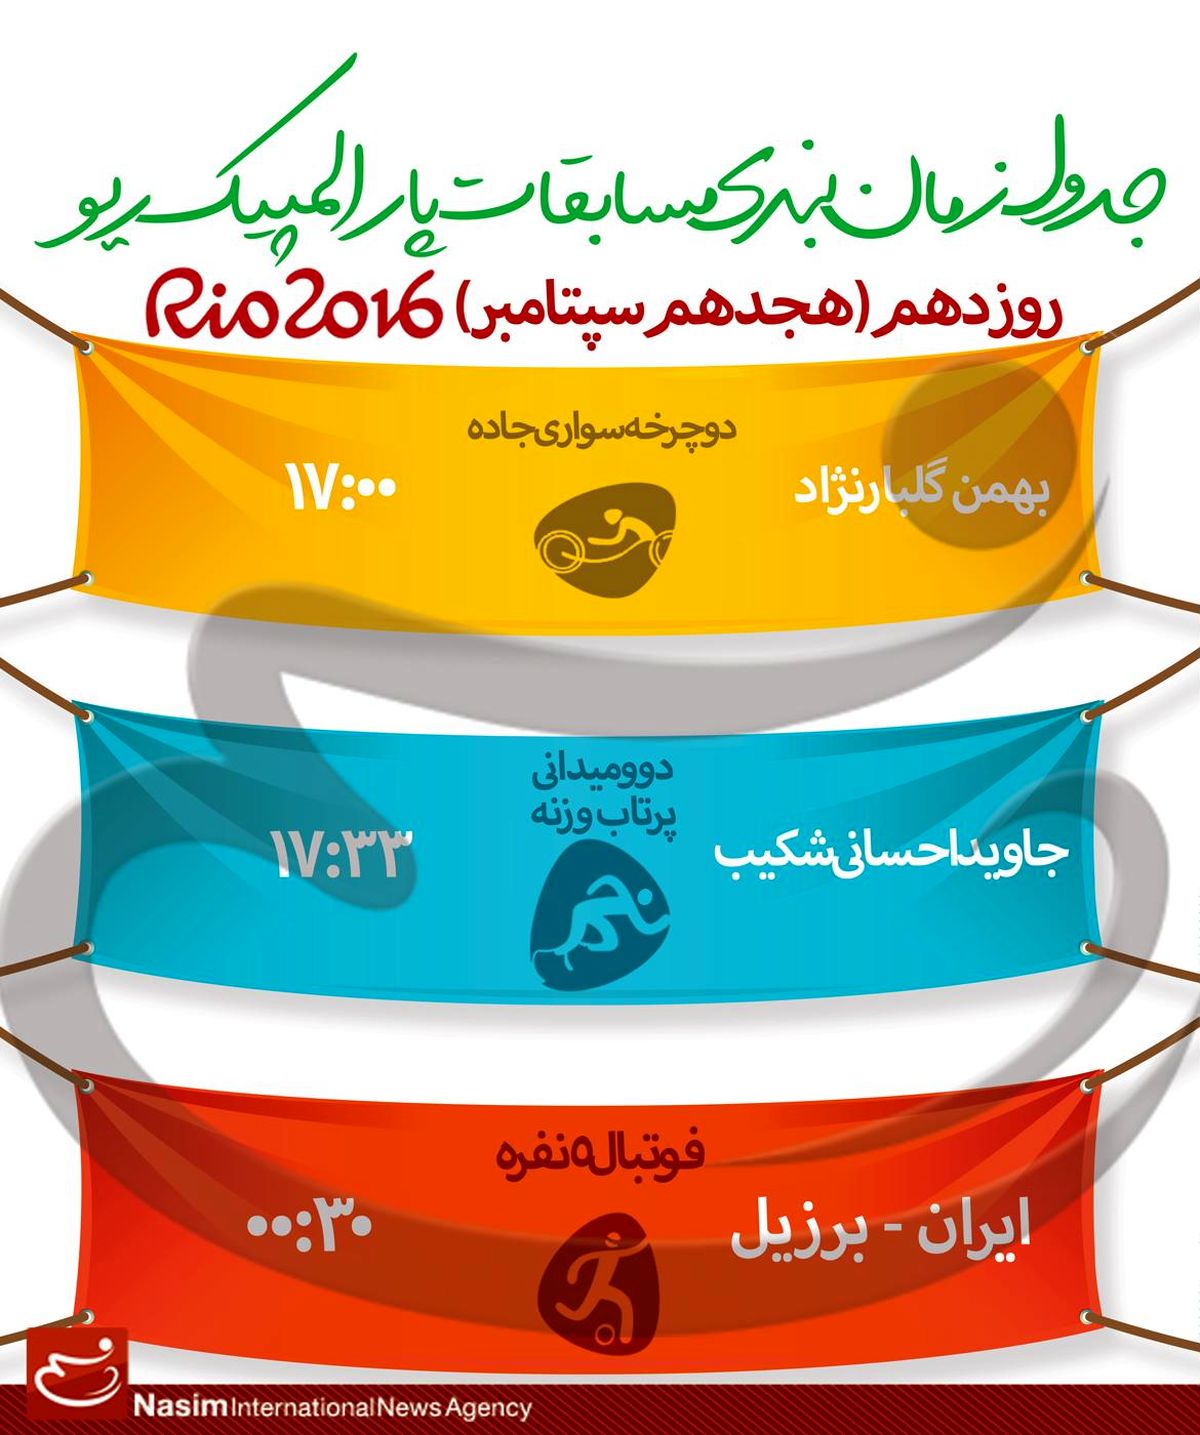 جدول زمانبندی مسابقات نمایندگان ایران در "روز دهم" پارالمپیک ریو